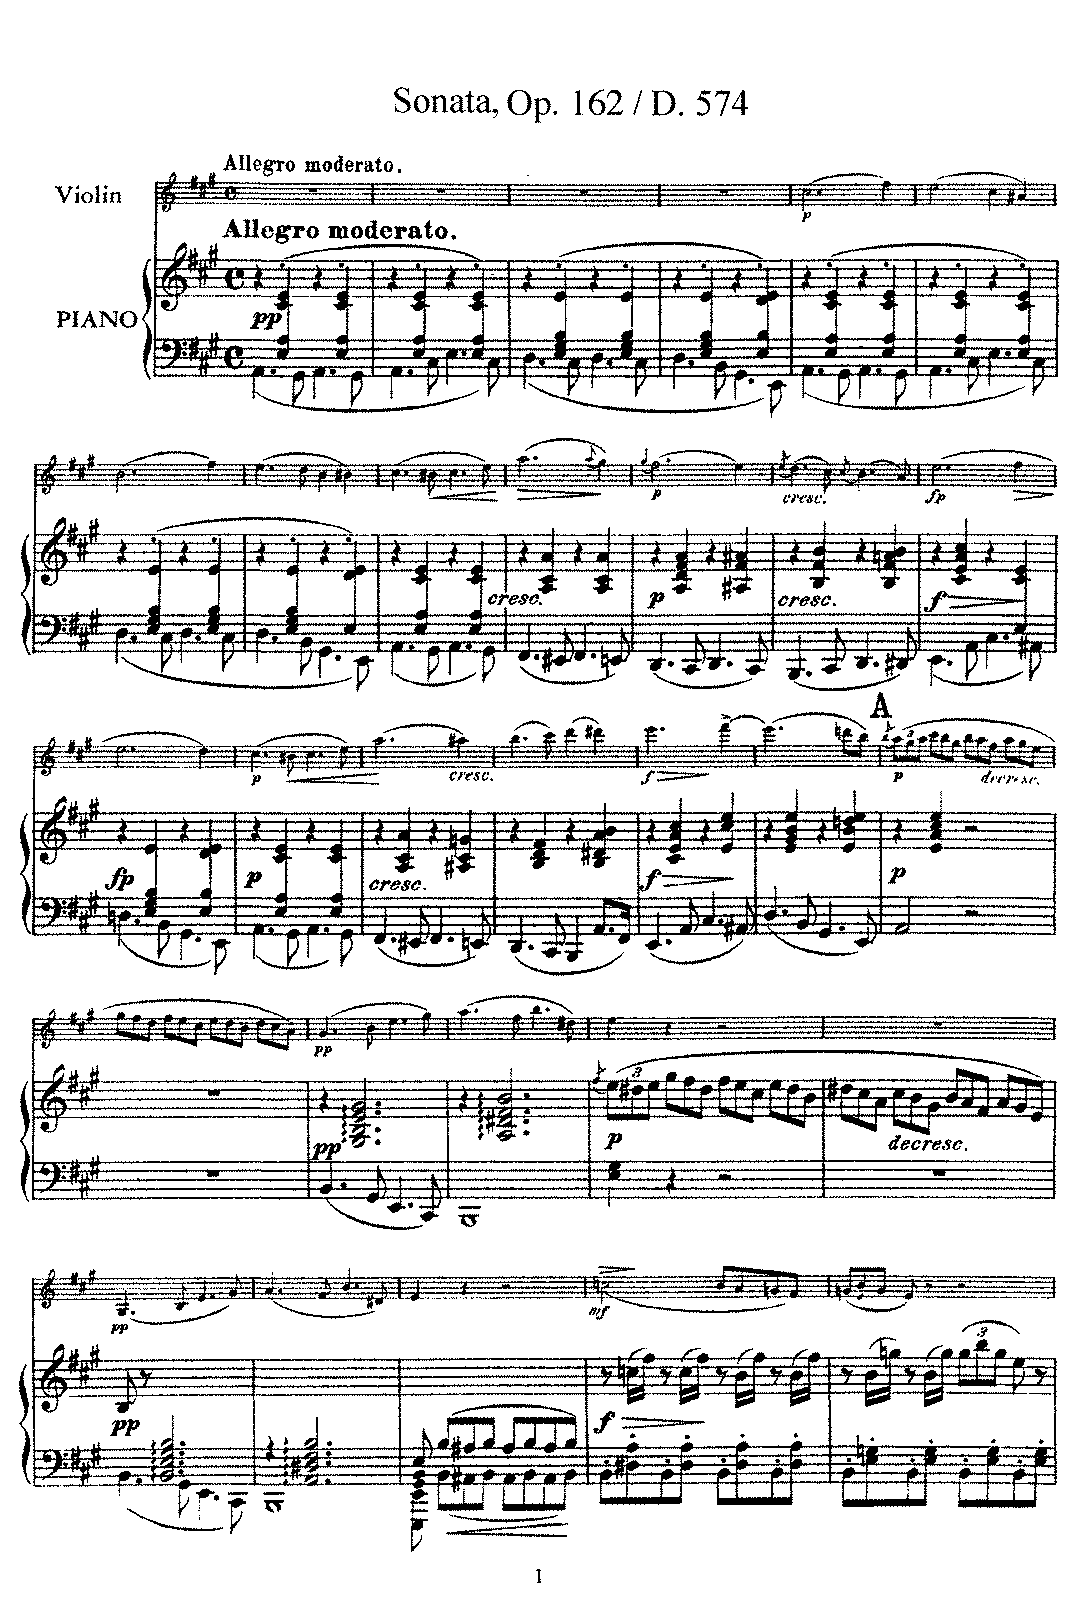 franz schubert compositions sonata